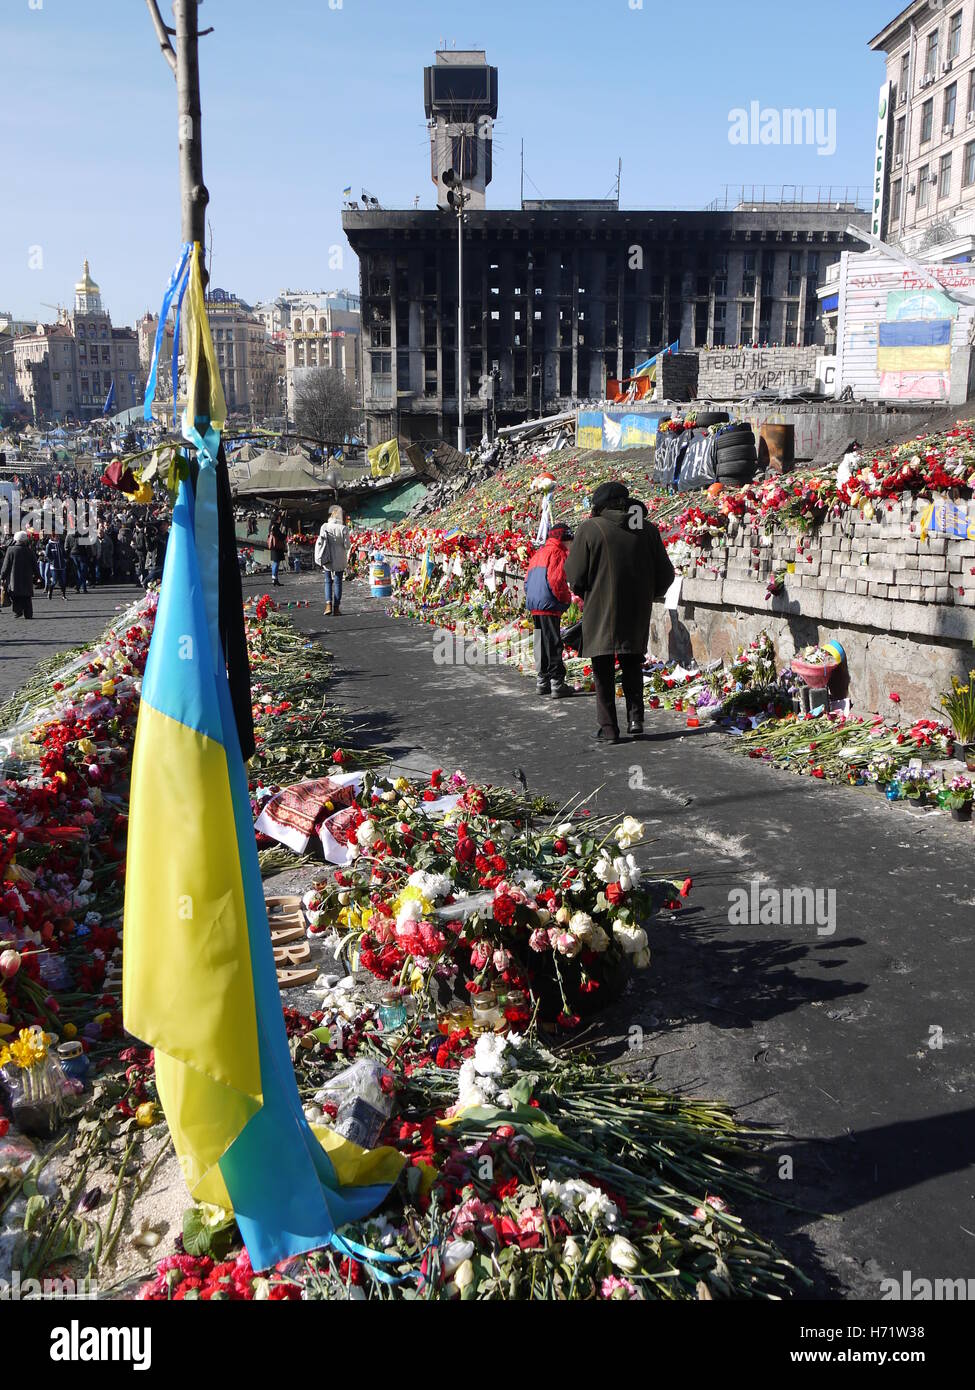 Les gens pleurent les victimes sur la place de l'indépendance (Maidan) à Kiev, quelques jours après la révolution de février 2014 Banque D'Images